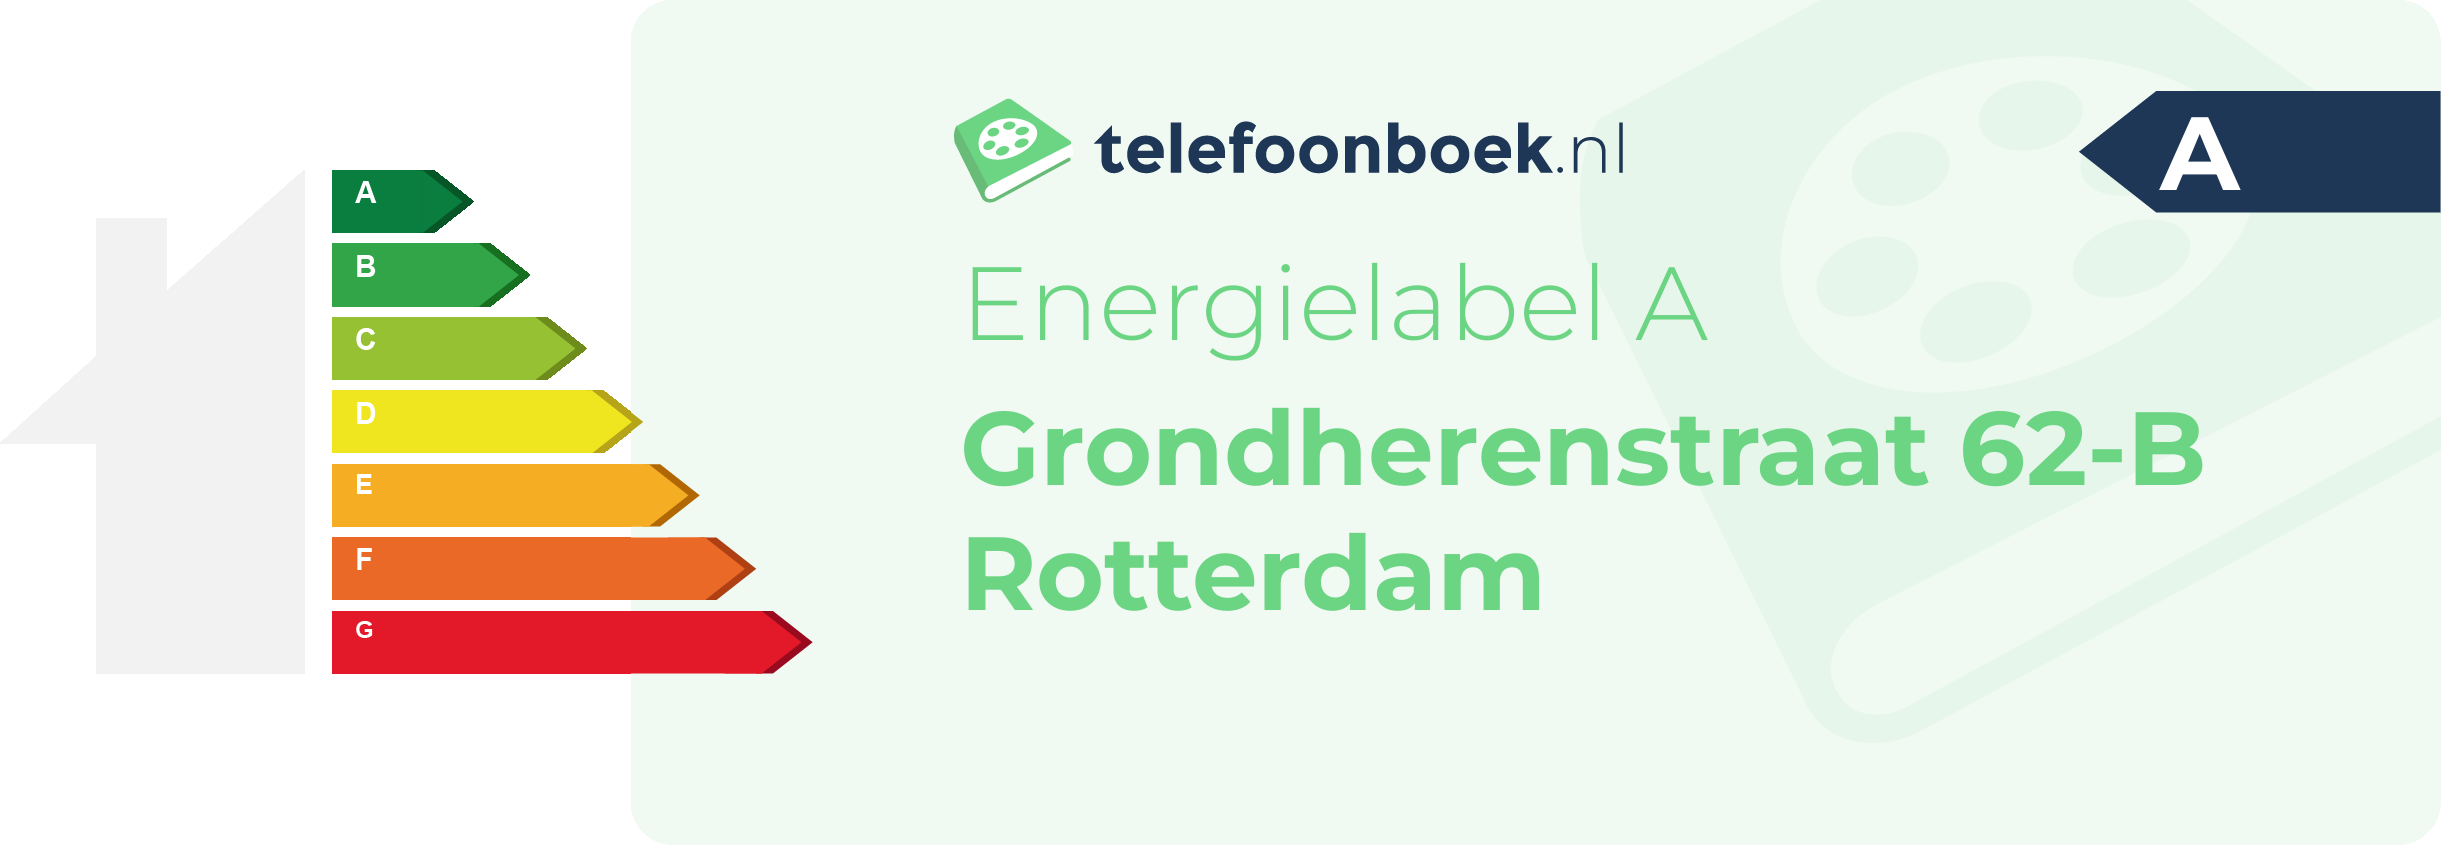 Energielabel Grondherenstraat 62-B Rotterdam